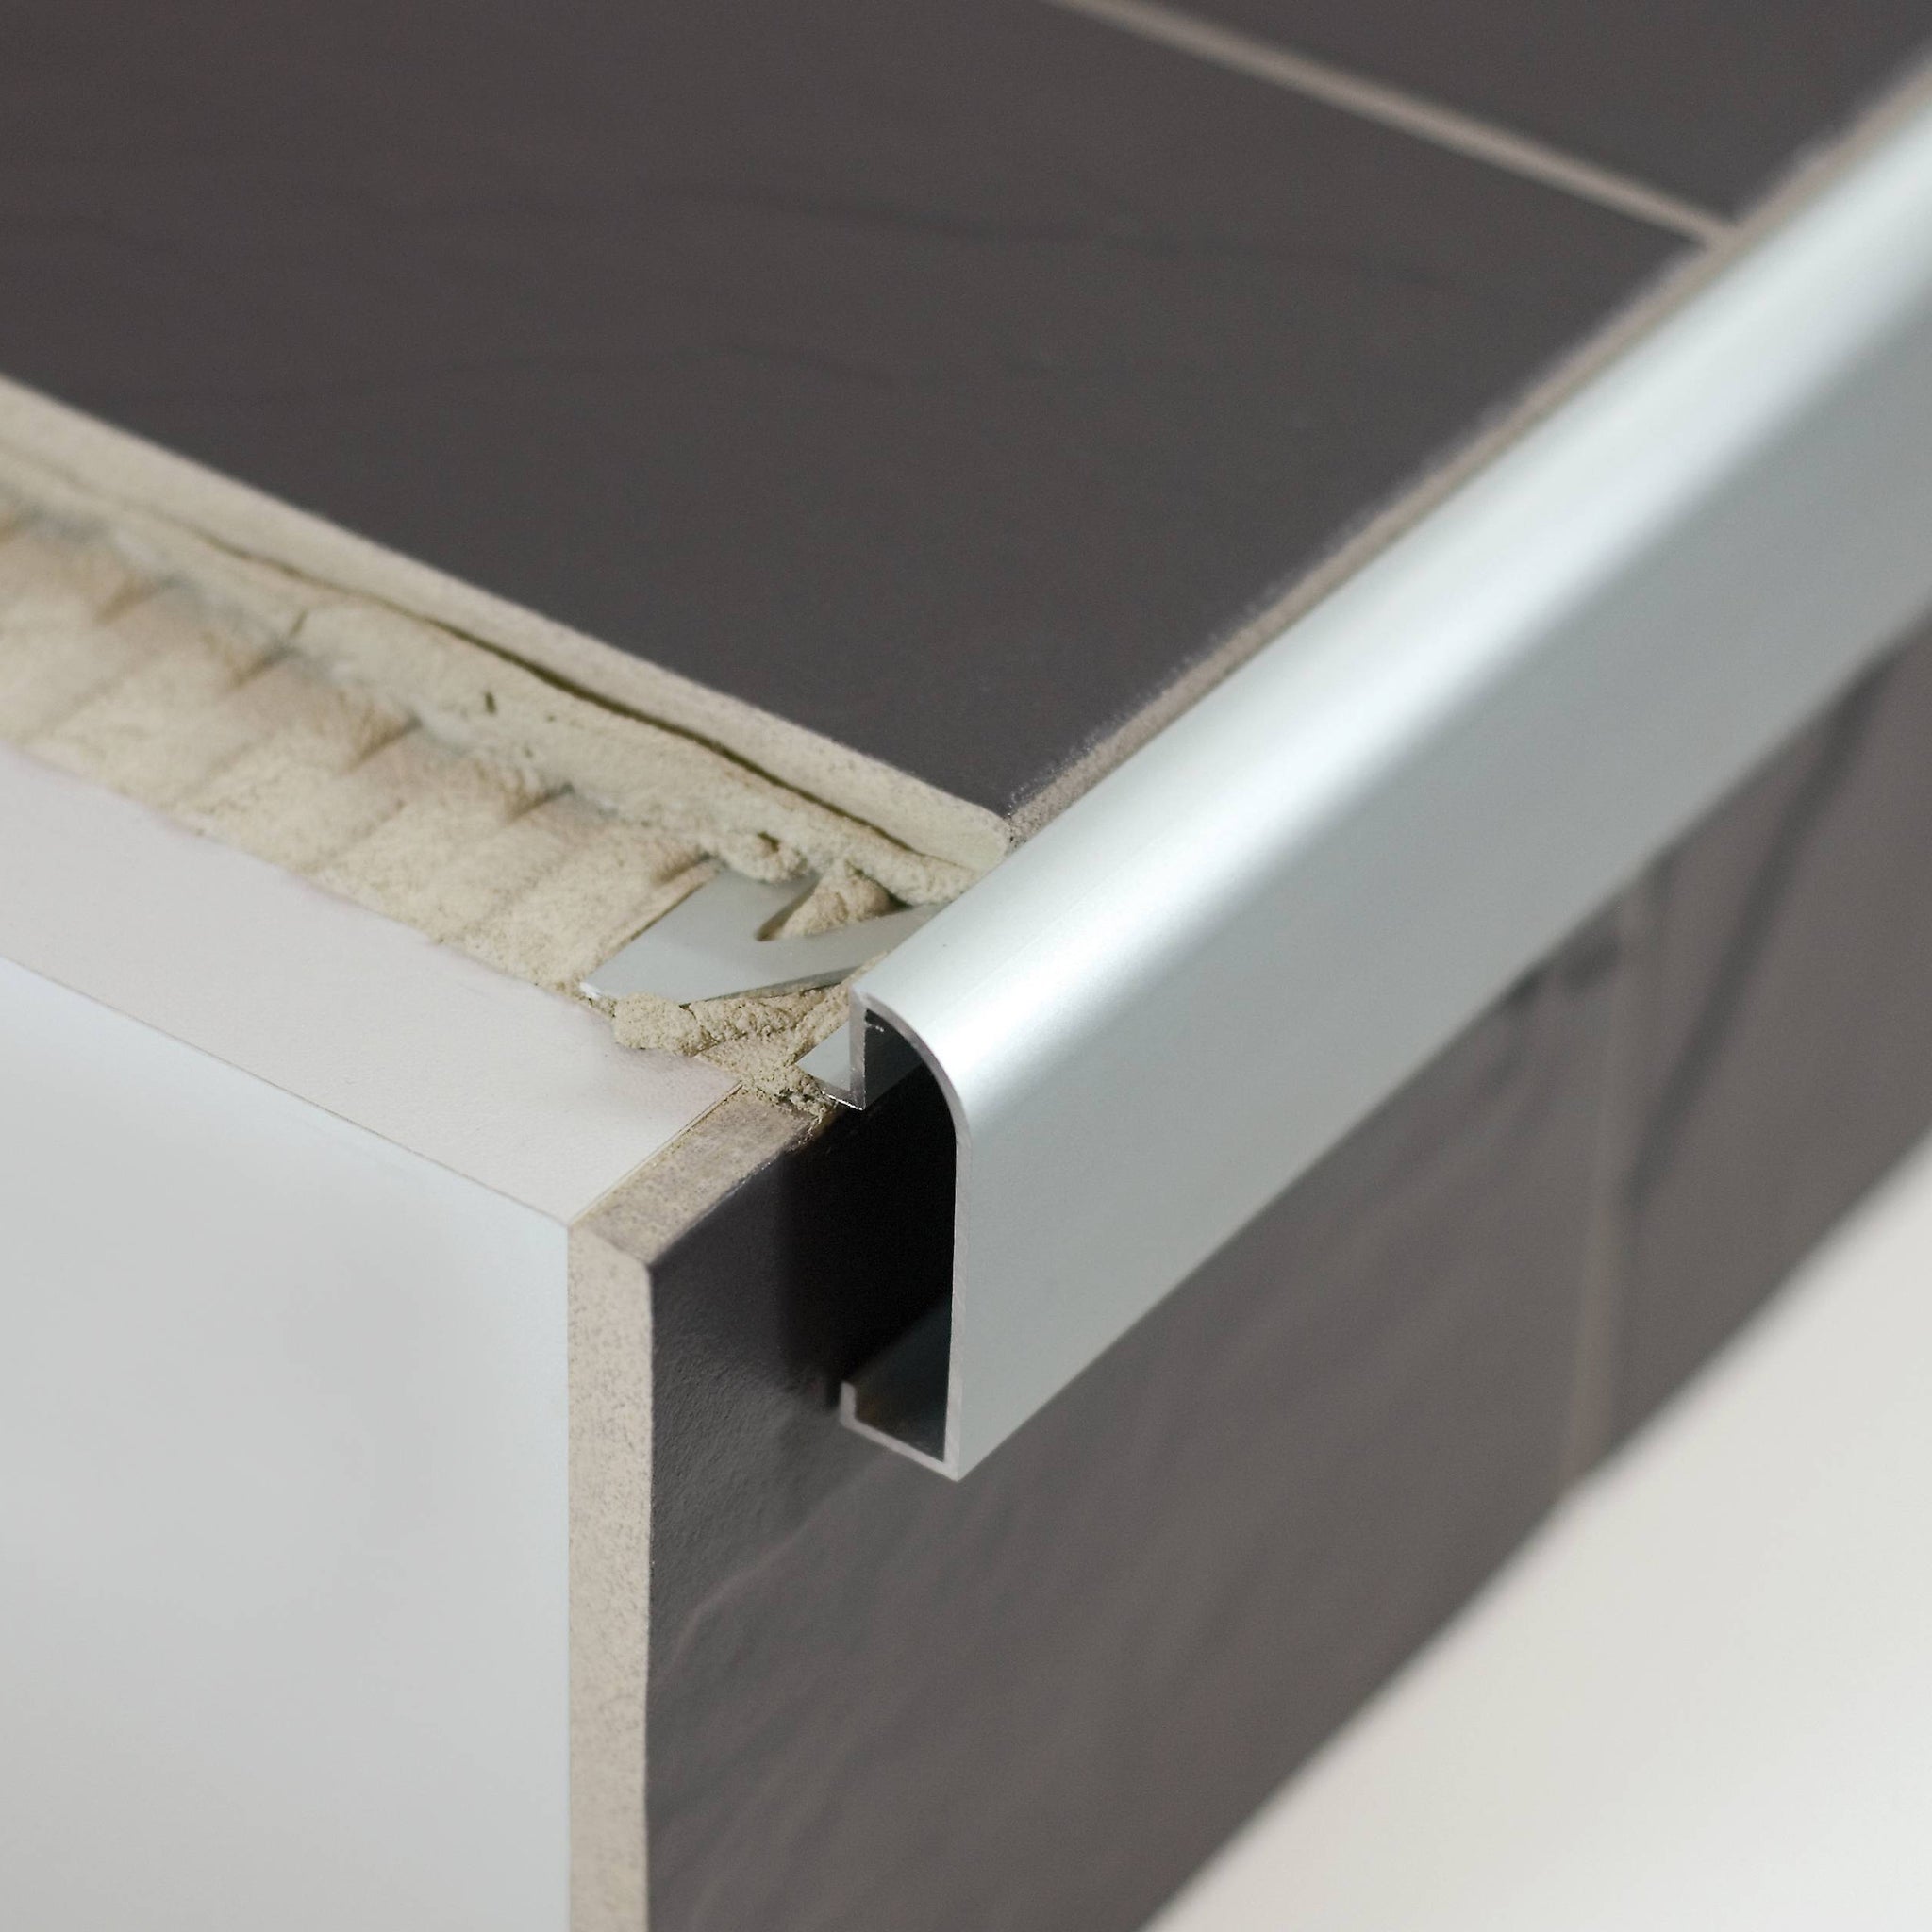 DURASTEP DP Worktop Trim 1/2 in. Aluminium - Silver Anodized - Tile Trim Edge